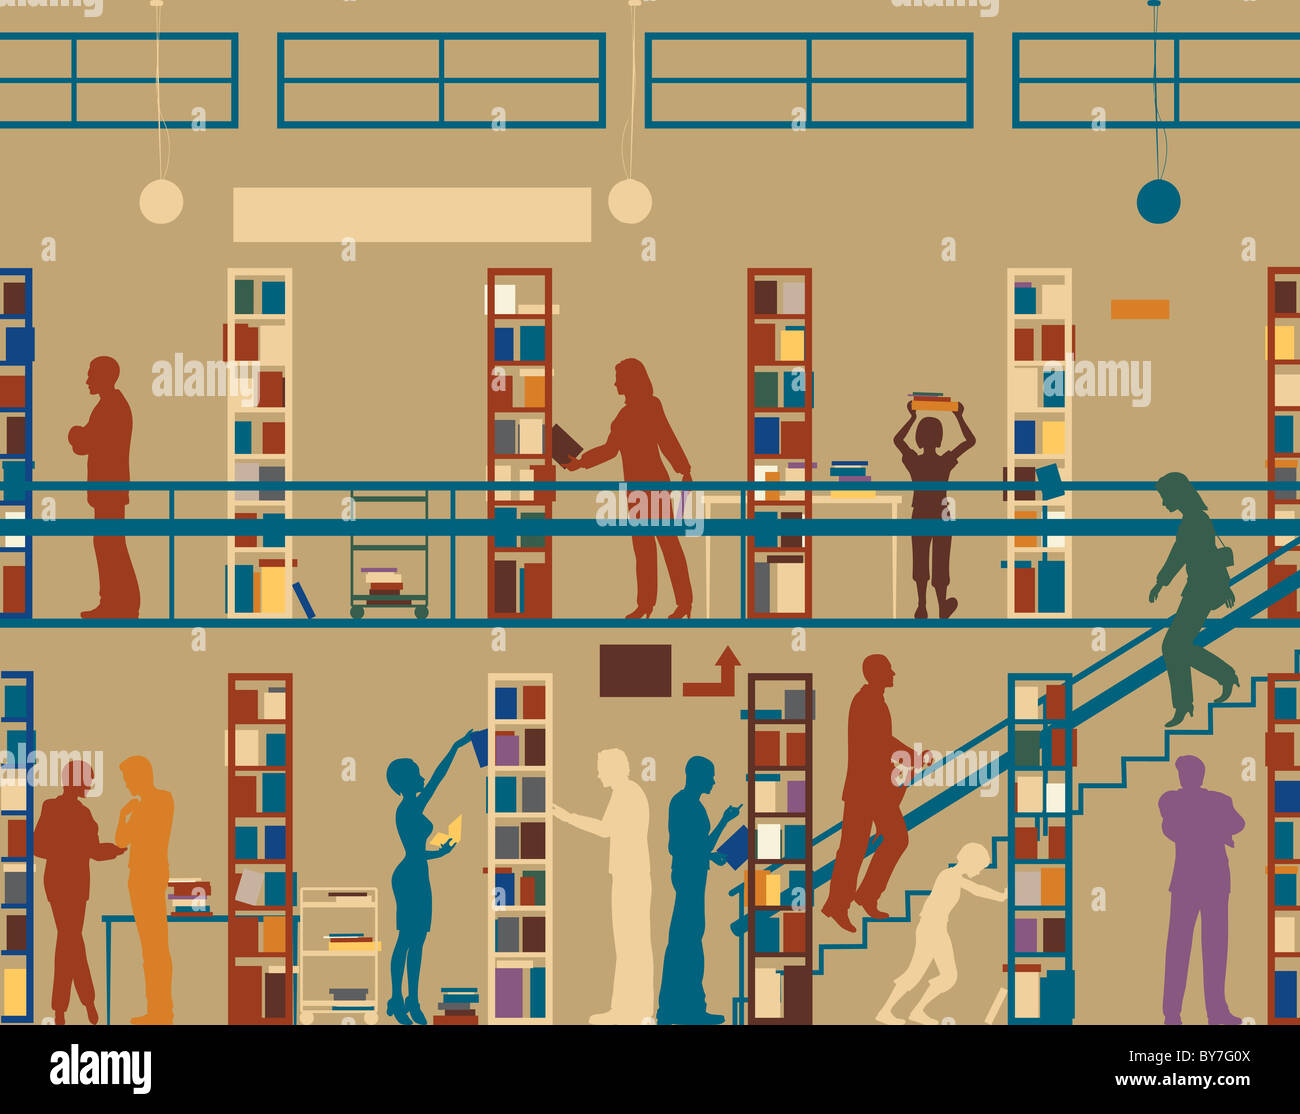 Illustrierte Silhouette der bunte Menschen in einer Bibliothek Stockfoto